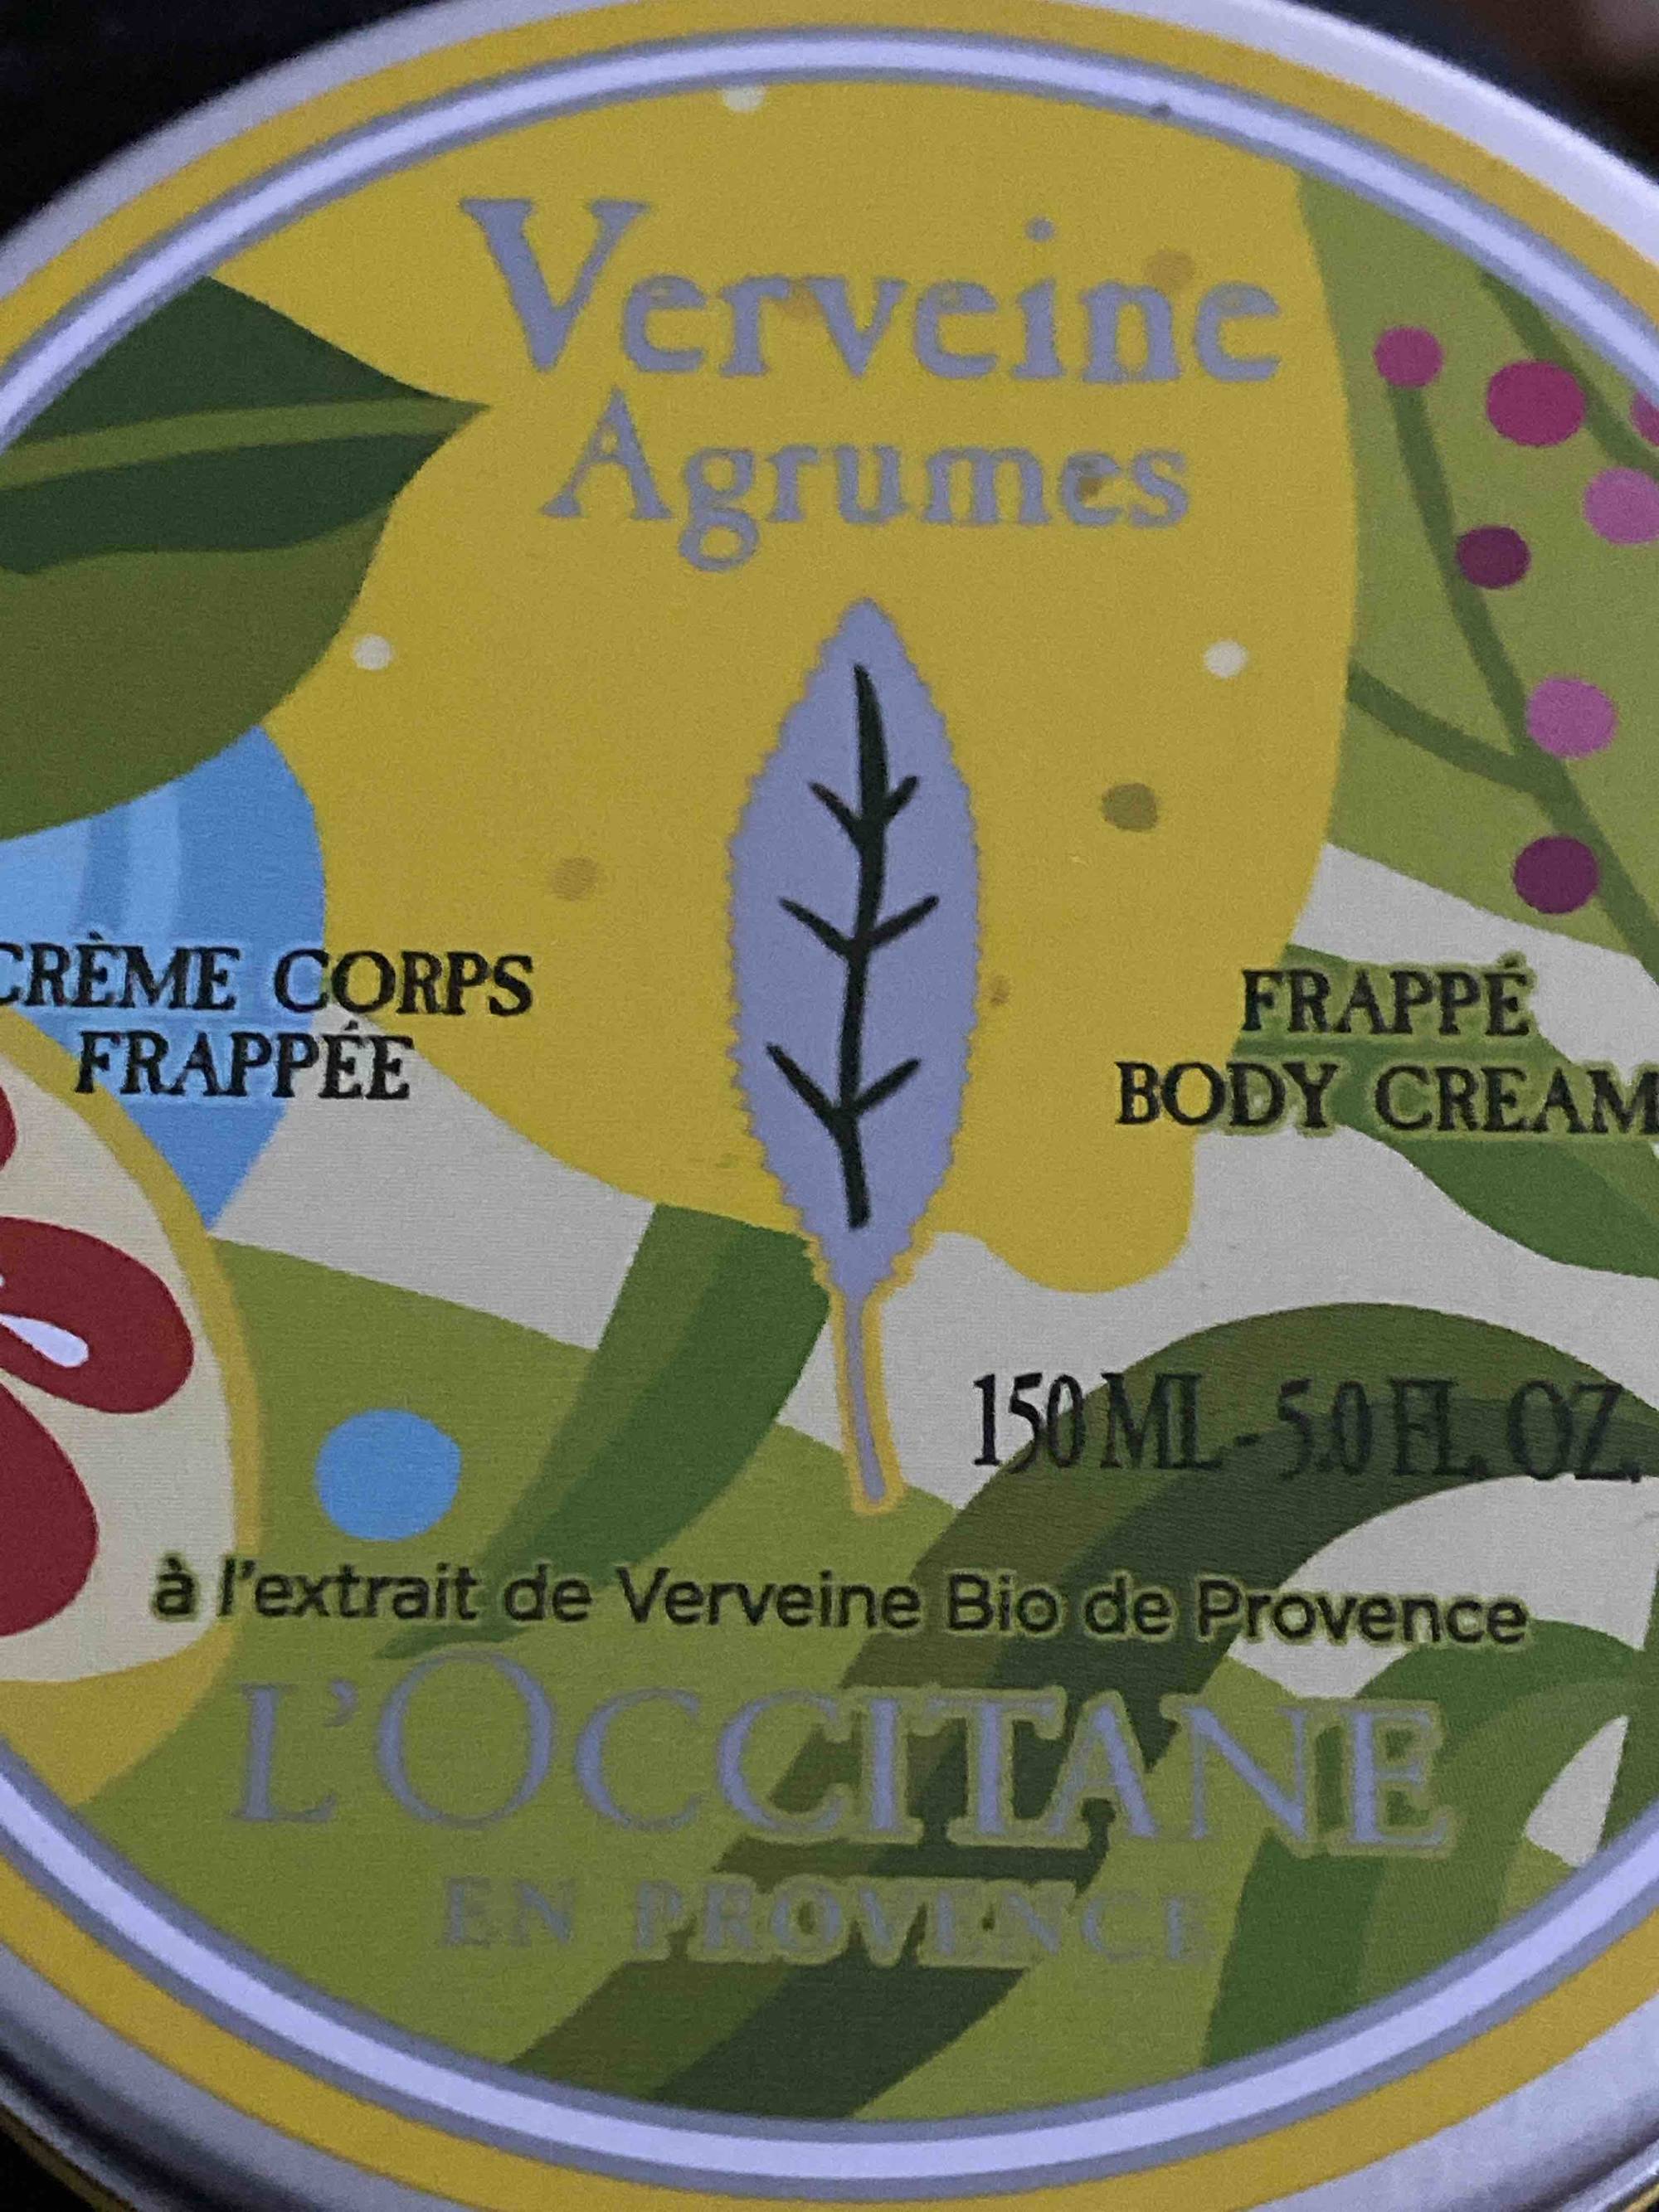 L'OCCITANE EN PROVENCE - Verveine Agrumes - Crème corps frappée